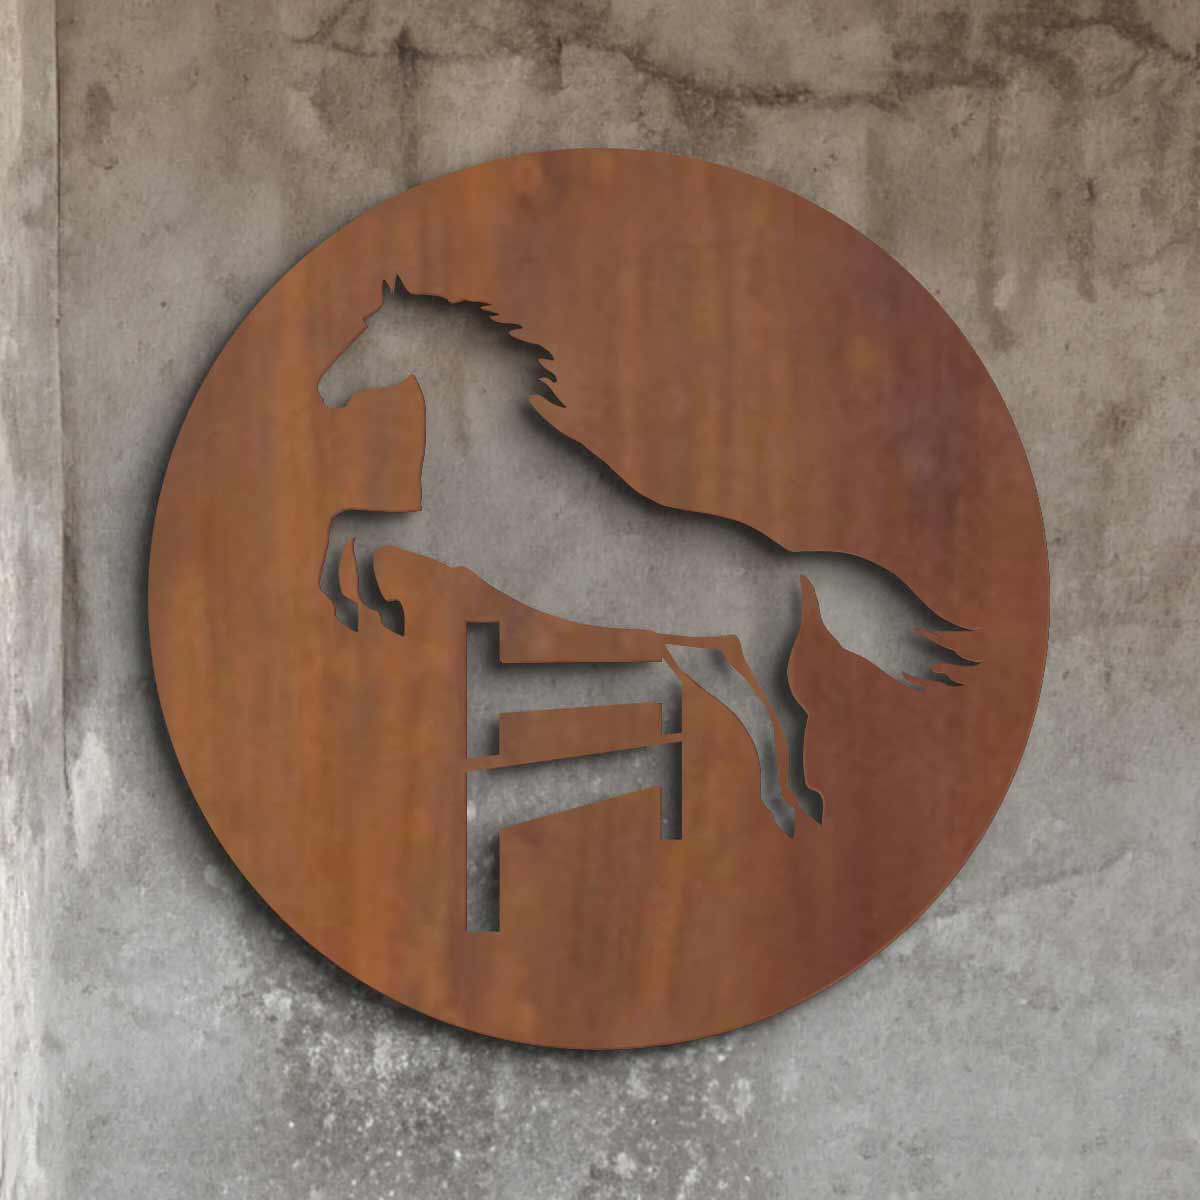 Spring paard in cirkel - cortenstaal wanddecoratie voor binnen en buiten